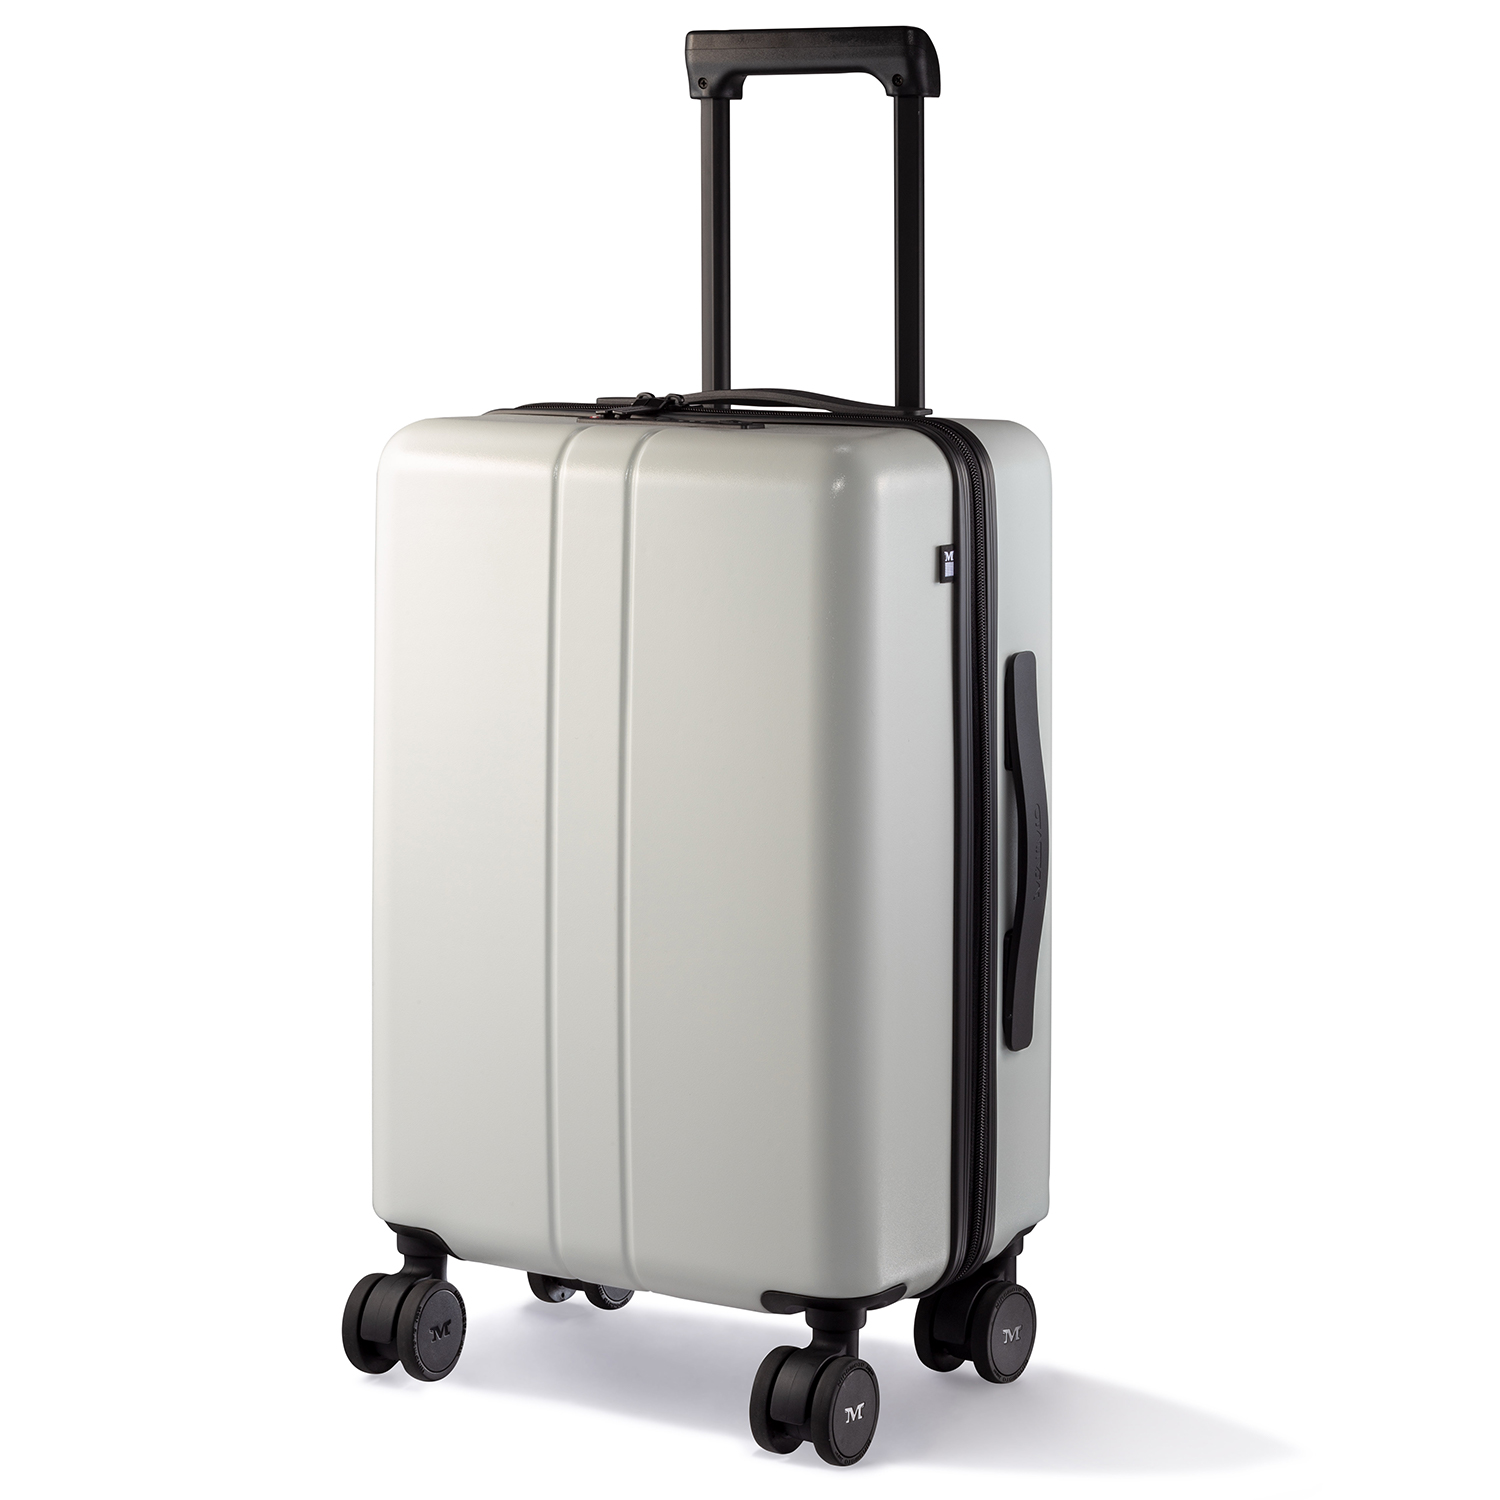 スーツケース キャリーケース MAIMO公式 キャリーバッグ Sサイズ 機内持ち込み 日本企業 超軽量 大容量 静音 ダブルキャスター  最新セキュリティー